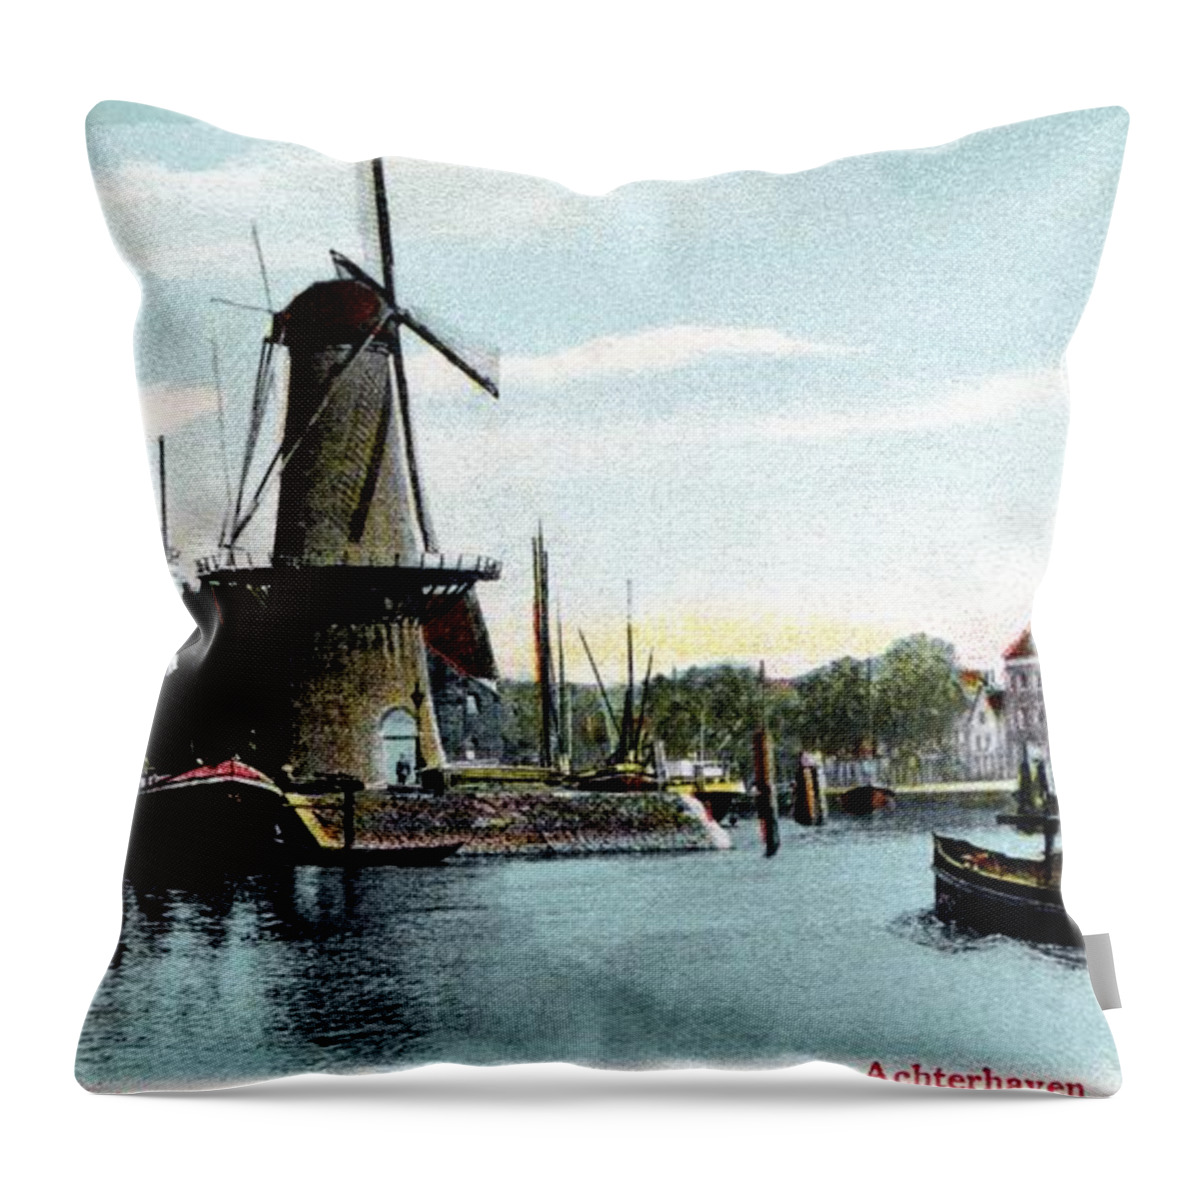 Rotterdam Throw Pillow featuring the photograph Rotterdam Achterhaven 1890 by Heidi De Leeuw